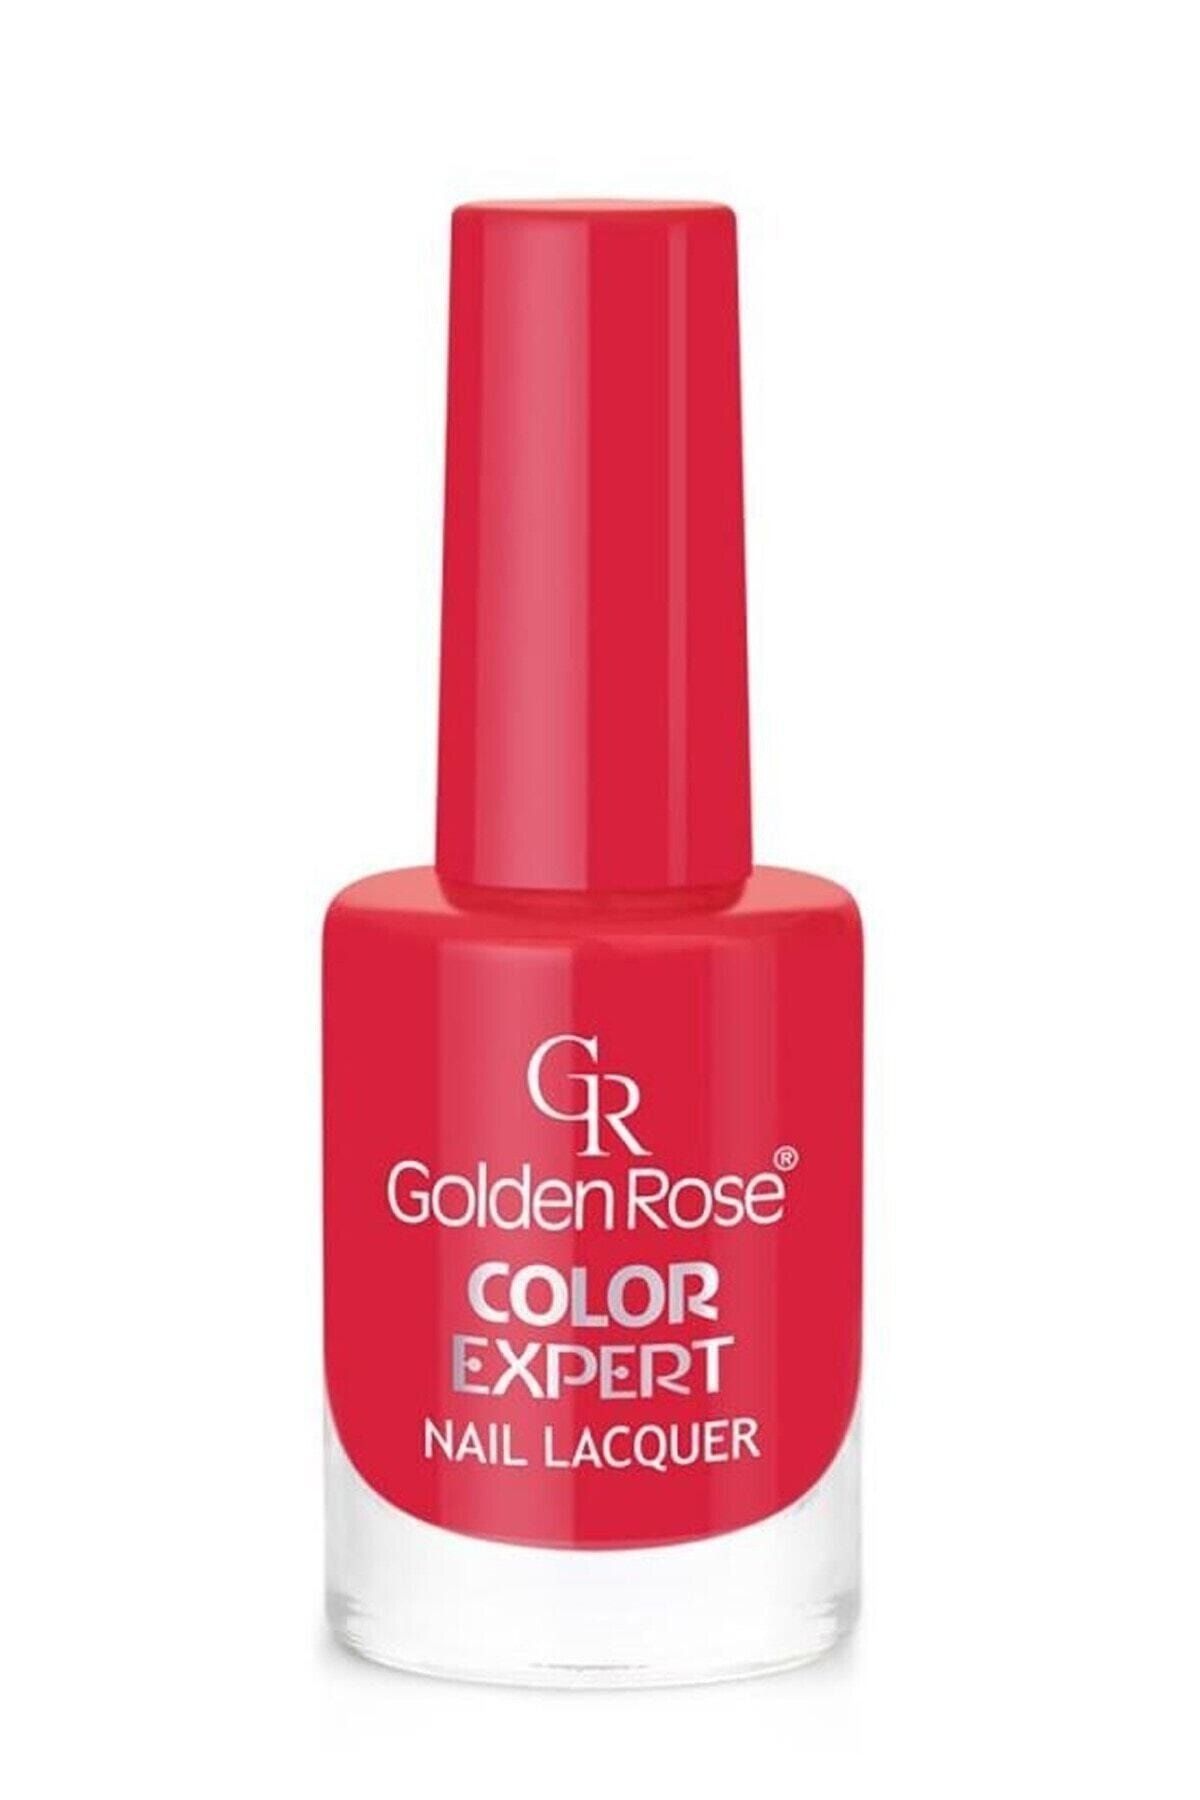 Golden Rose Marka: Color Expert Nail Lacquer No: 97 8691190703974 Kategori: Oje